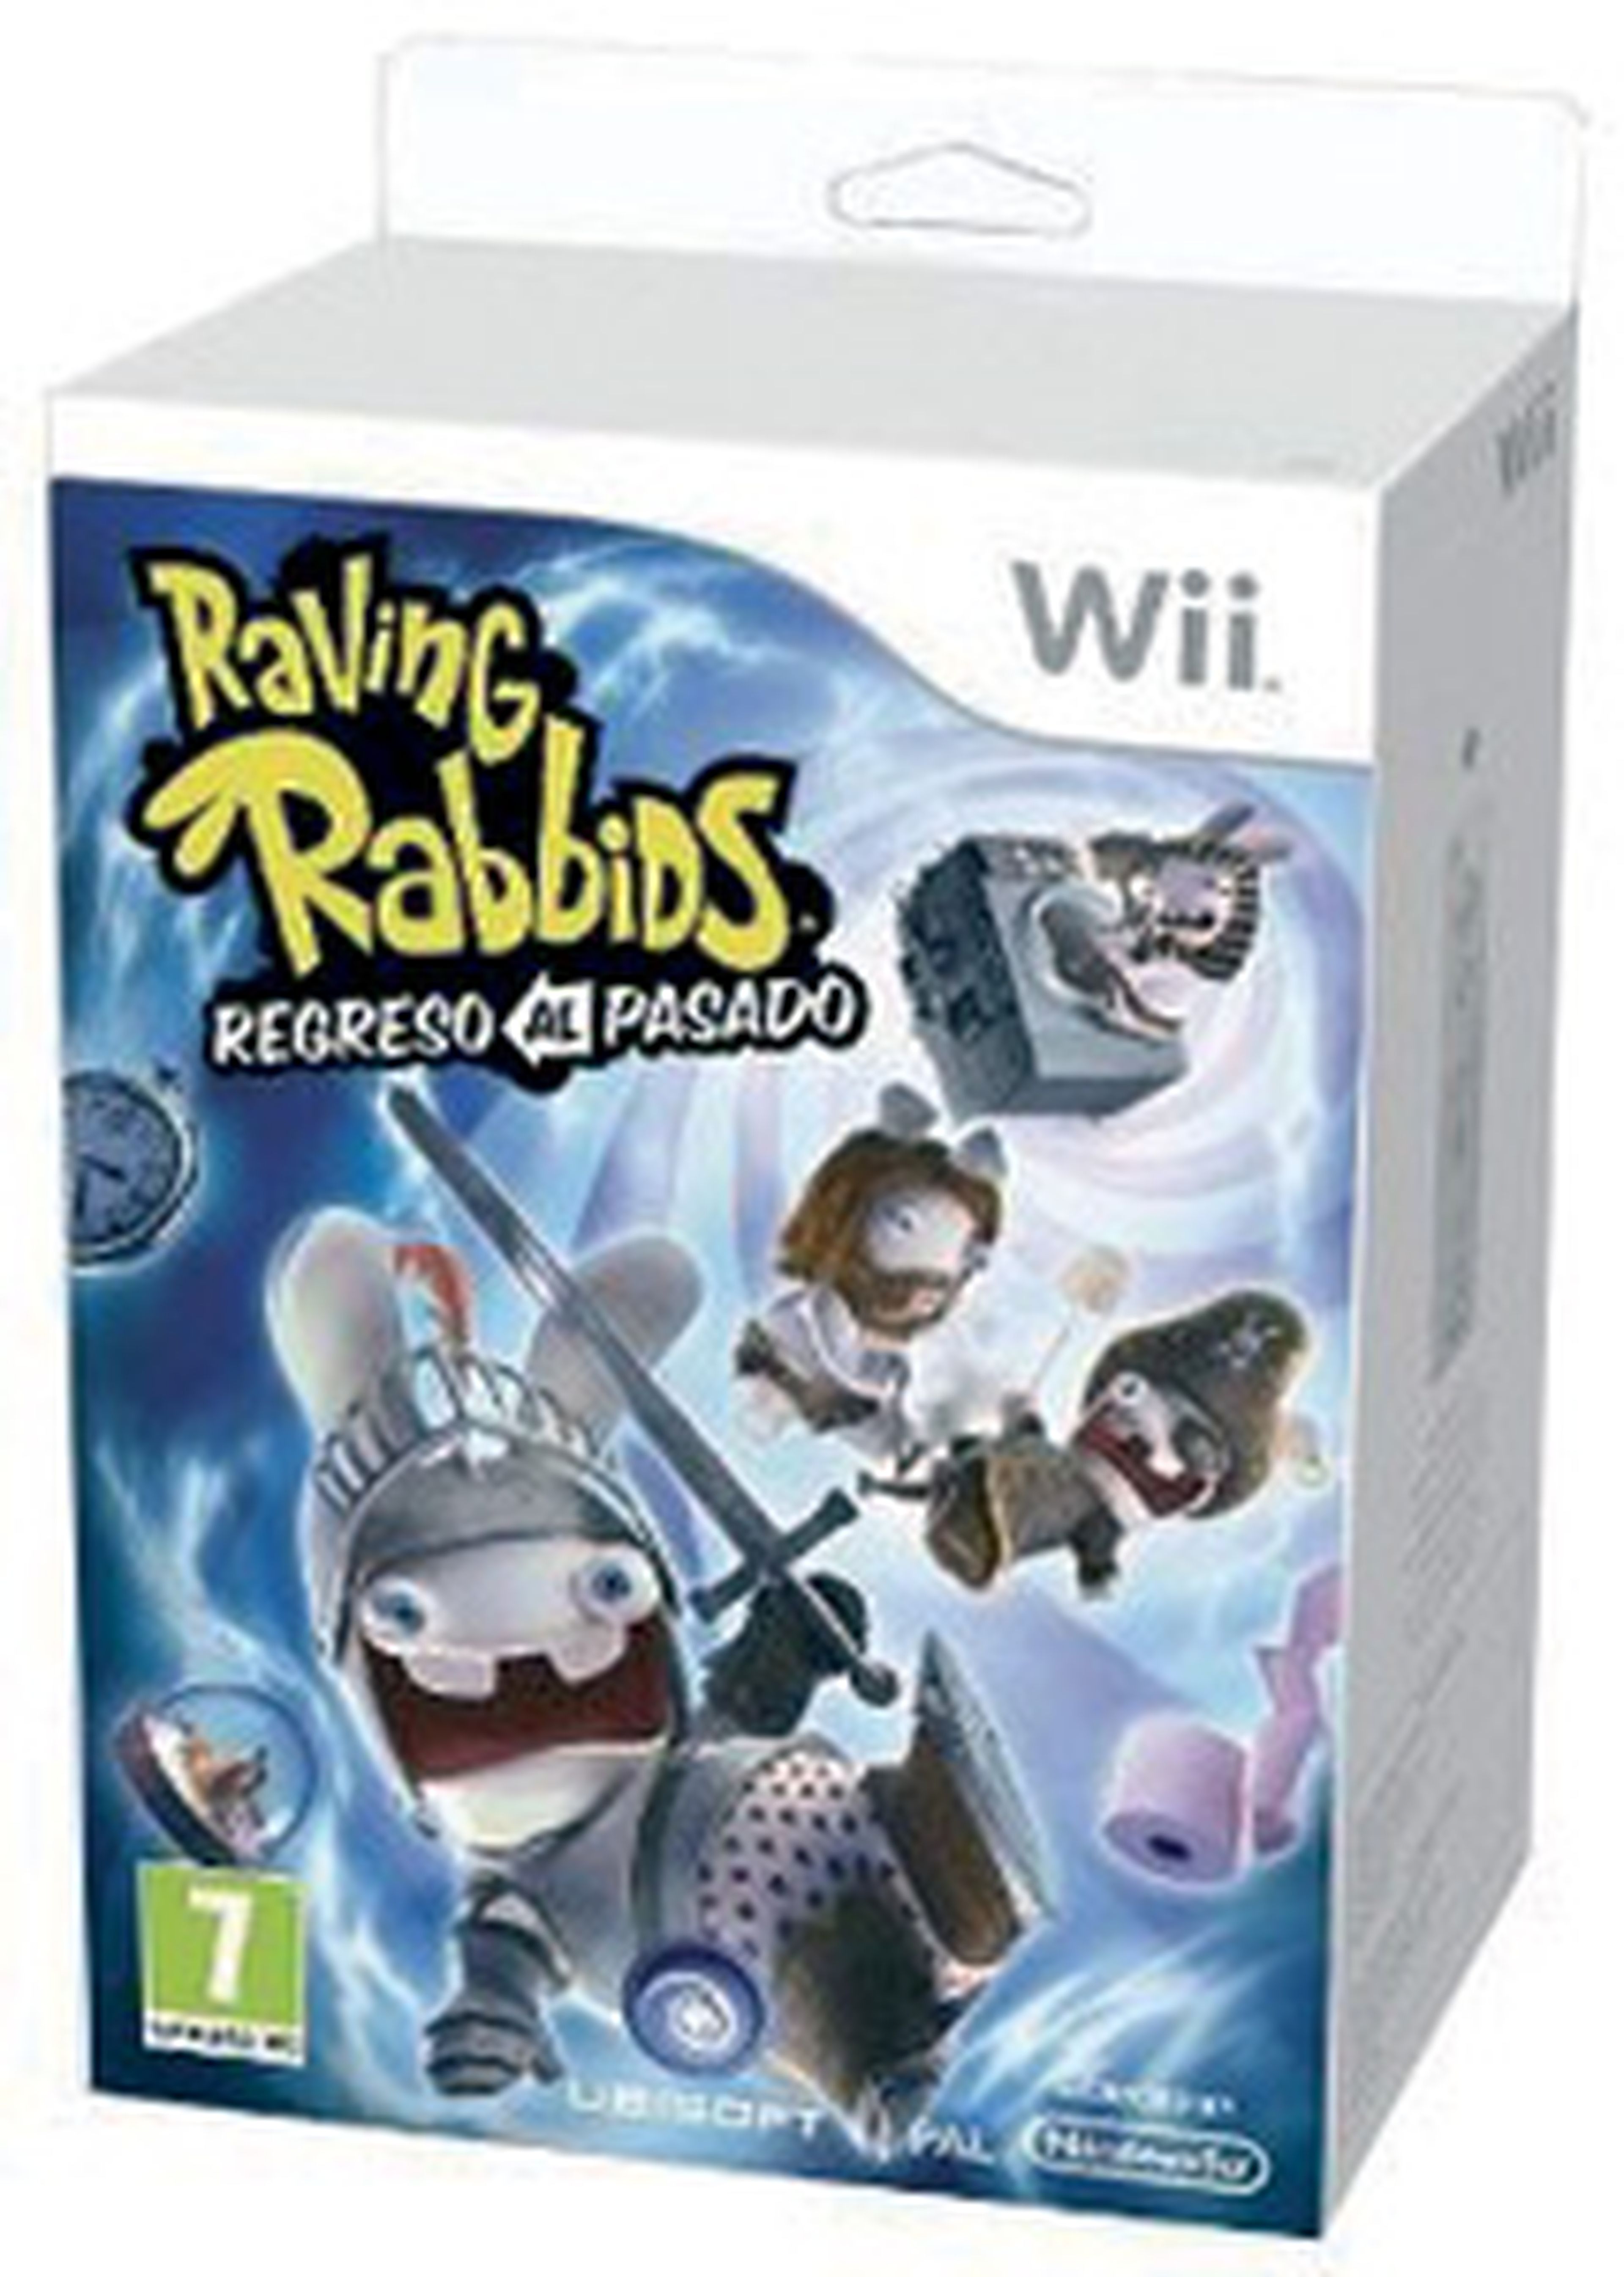 Raving Rabbids Regreso al Pasado para Wii